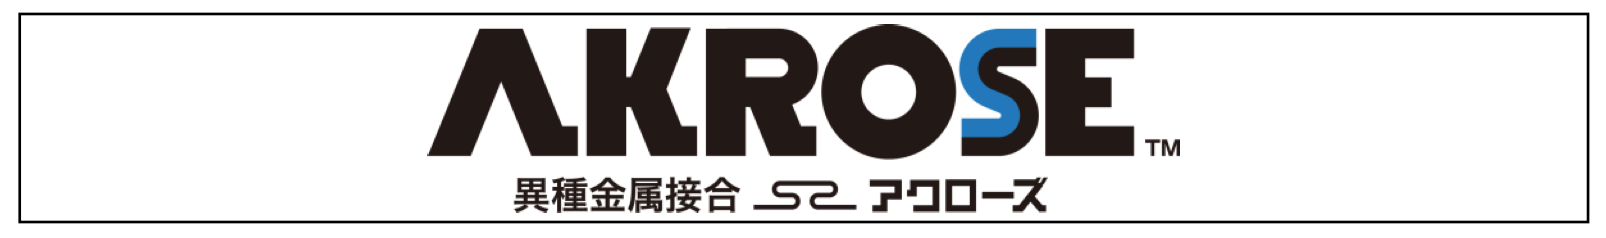 Logotype of AKROSE 2018-10-23 12.33.56.png